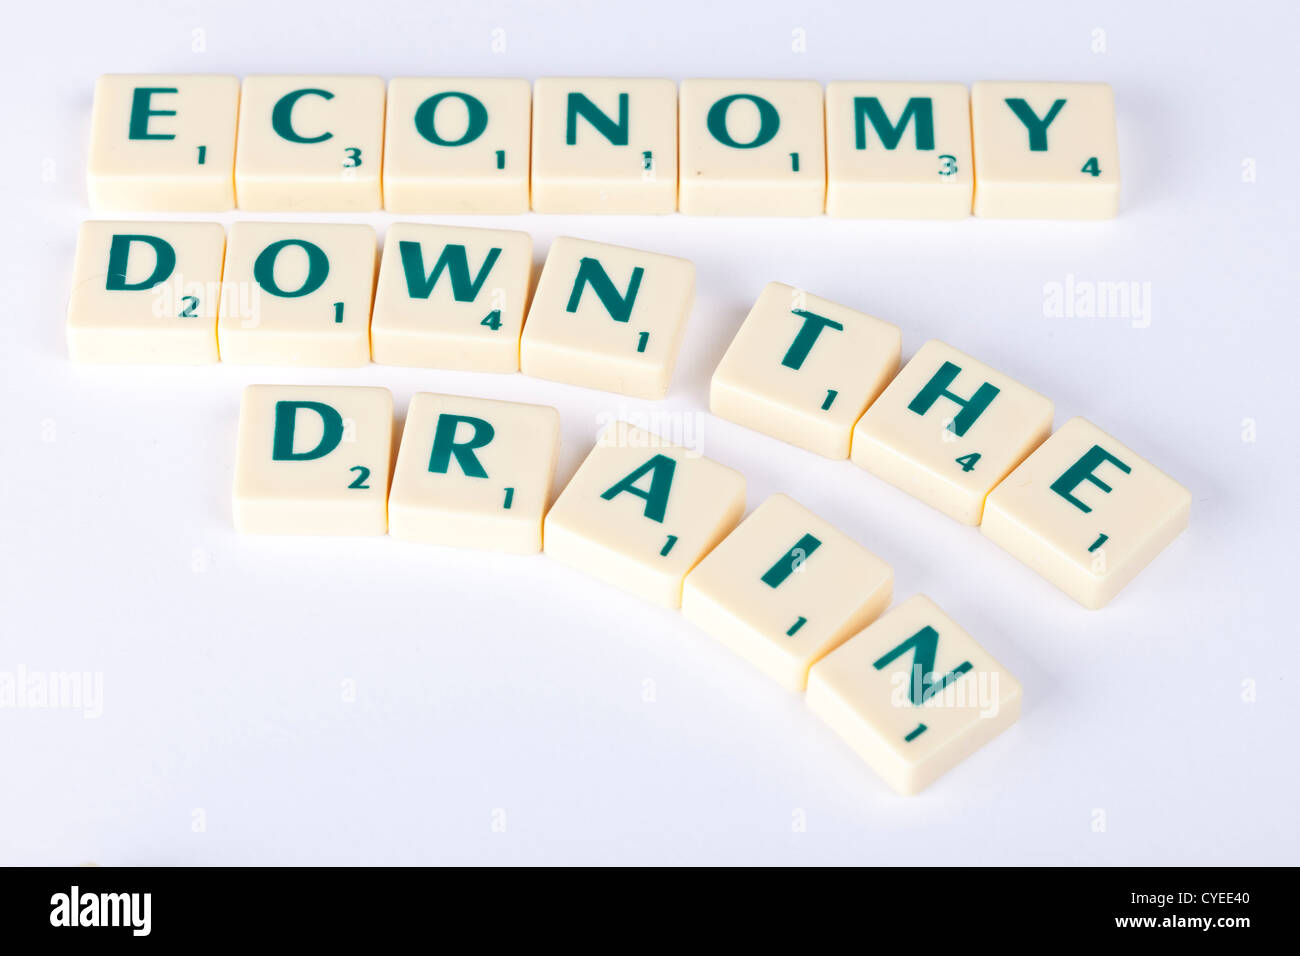 wirtschaftlichen Abschwungs Fliesen Wirtschaft den Bach runter, Konzept-Darstellung mit Scrabble-Buchstaben. Stockfoto